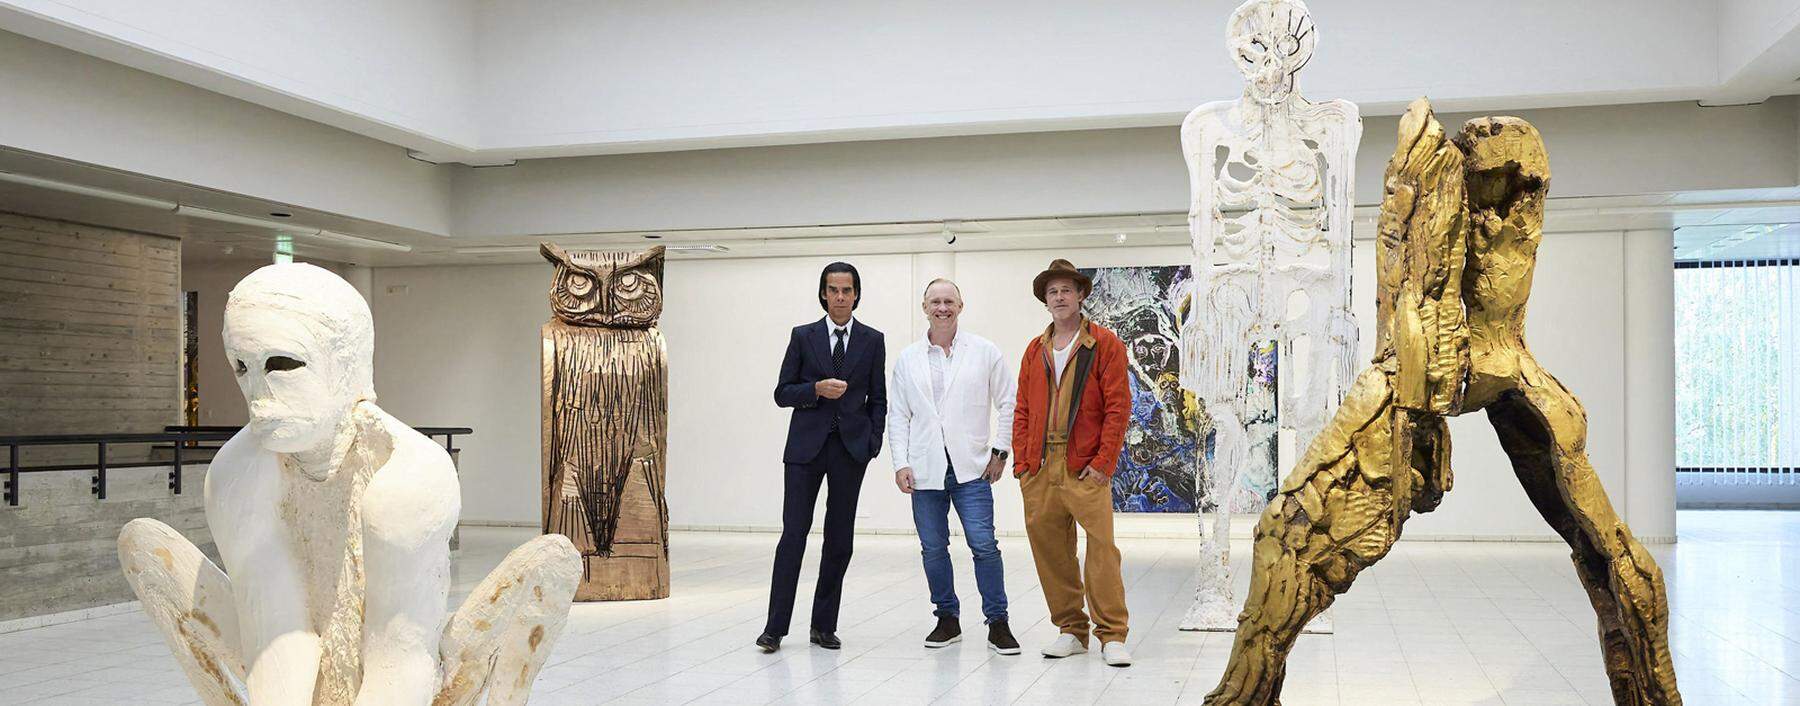 Bester Karriereschachzug: Thomas Houseago im Hilden Museum inmitten von Brad Pitt, Nick Cave und seinen Skulpturen.